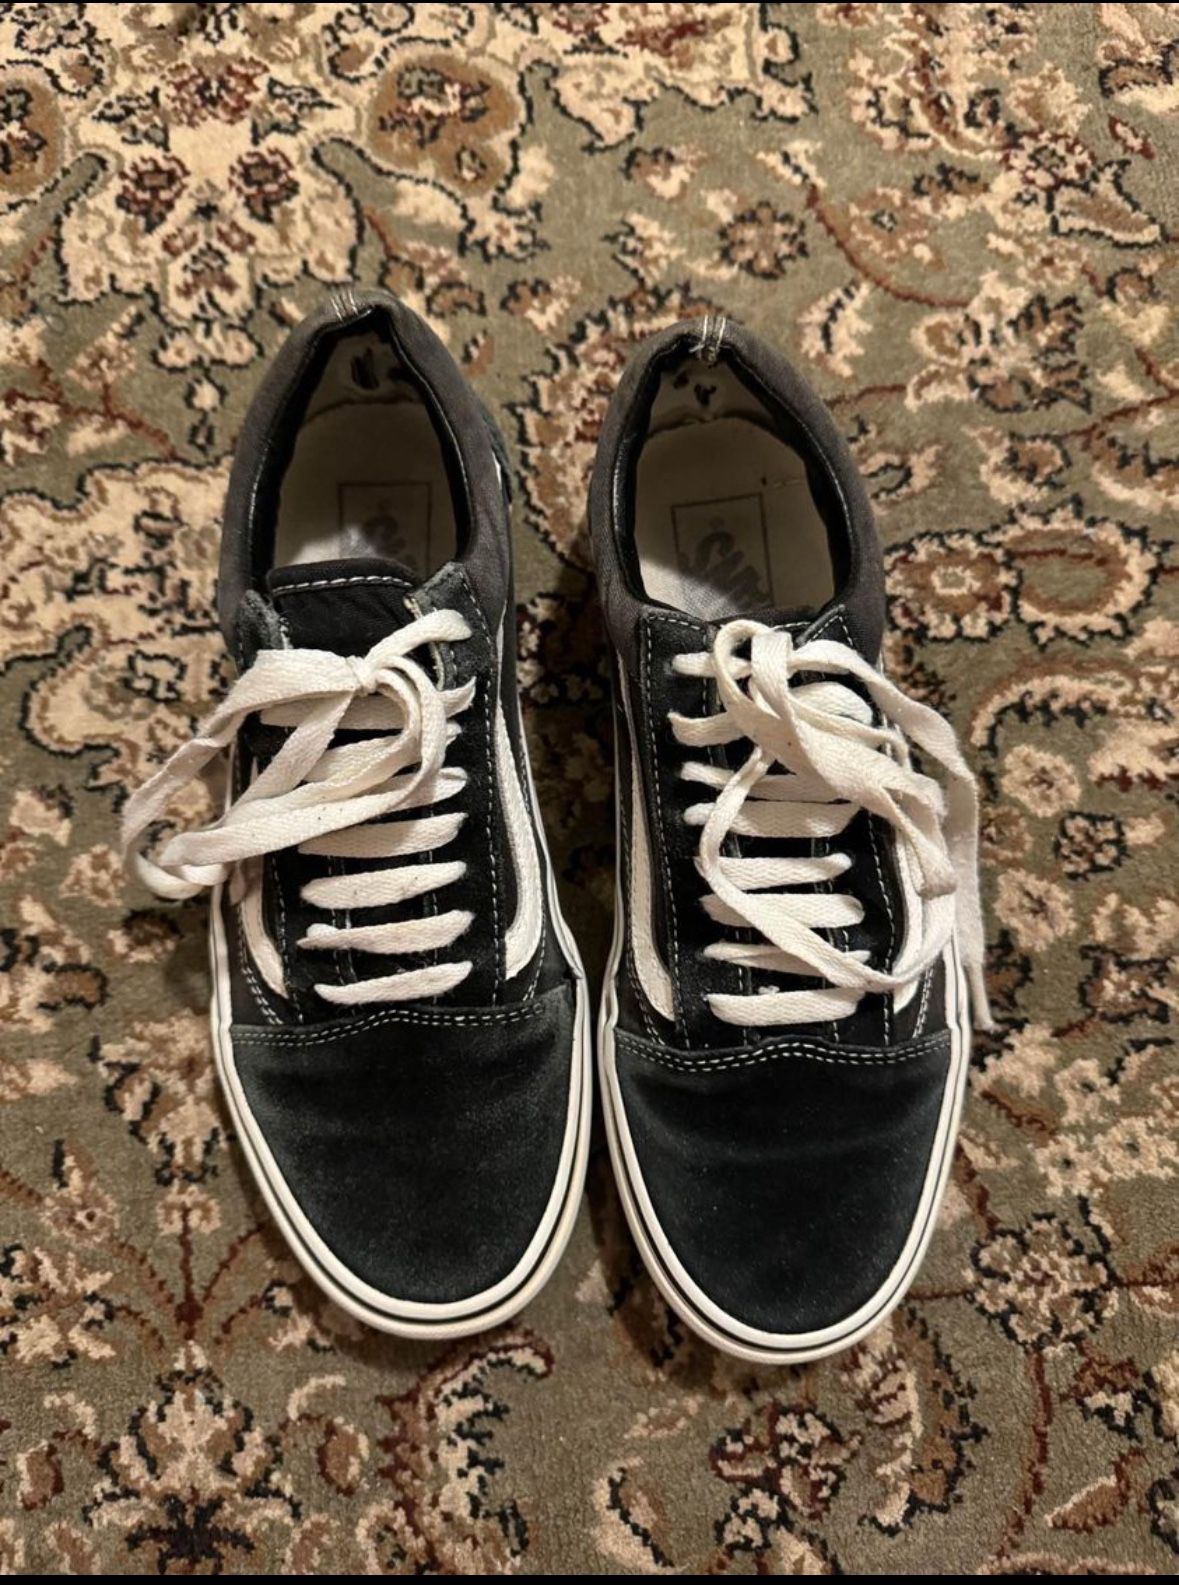 Vans old skool shoes